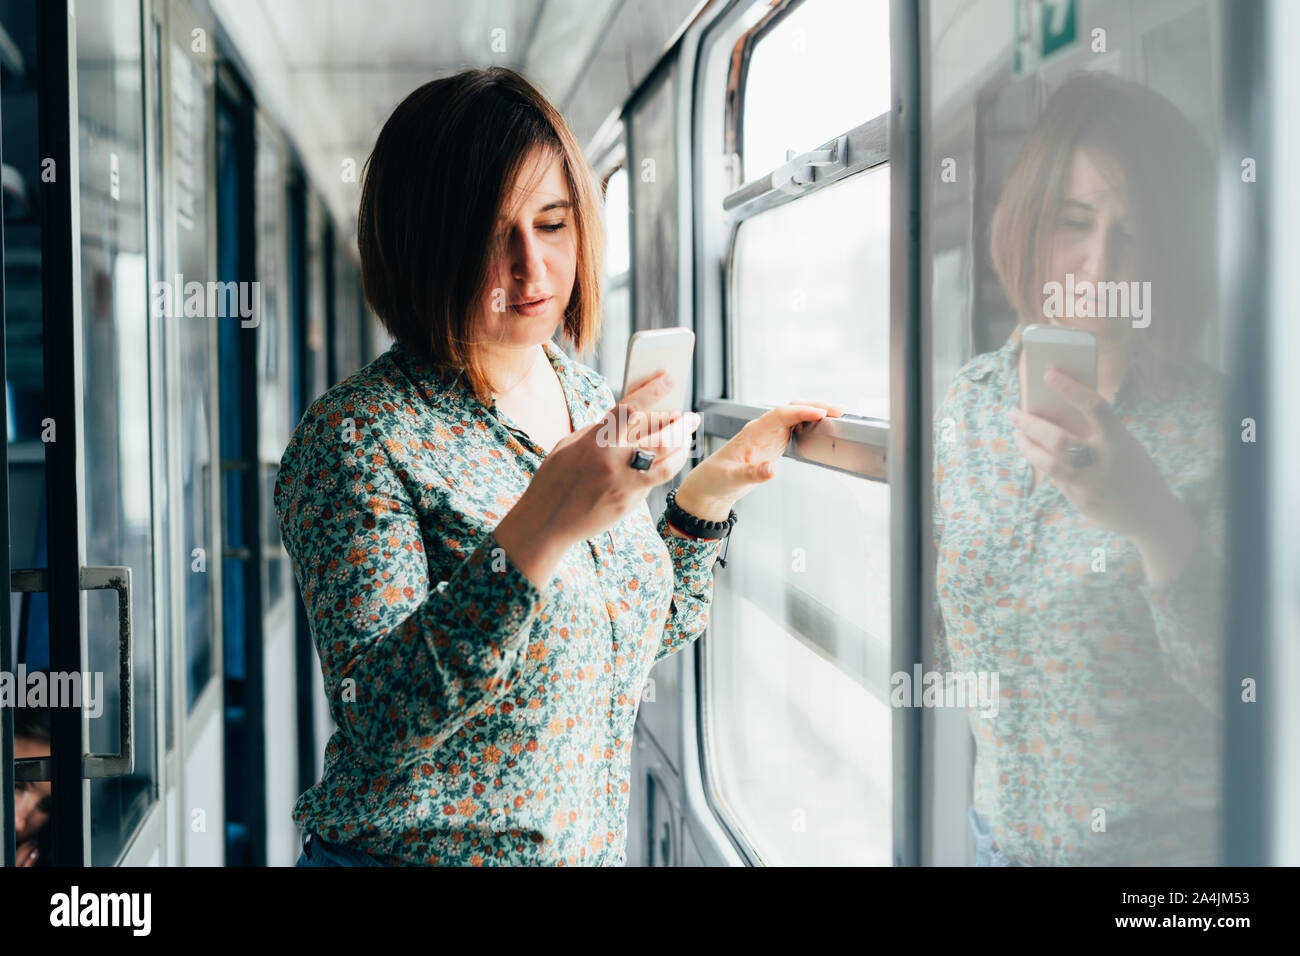 Jolie femme brune dans une chemise avec un téléphone dans sa main Banque D'Images